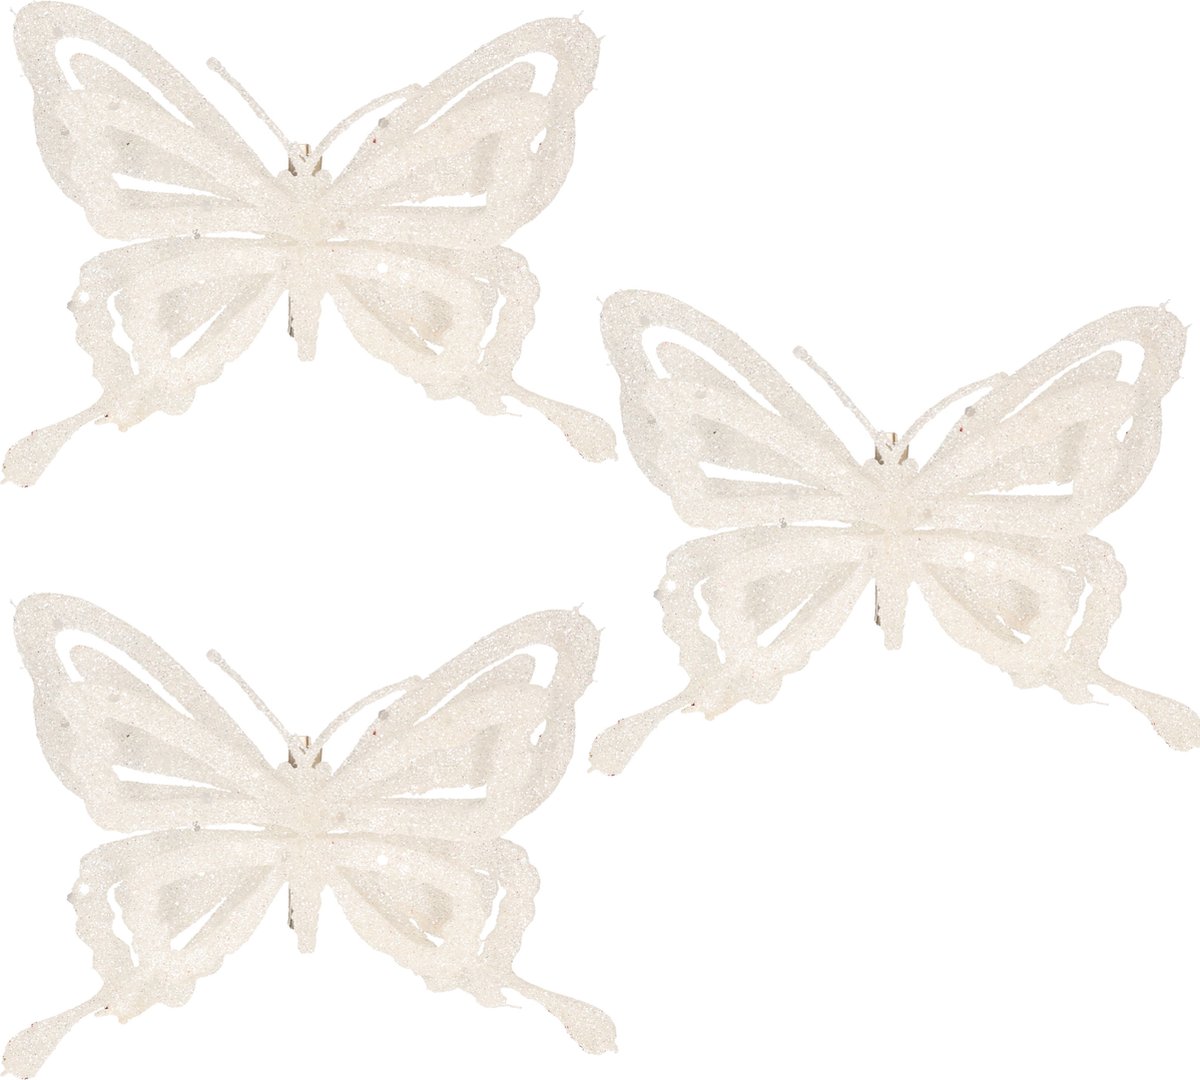 10x stuks decoratie vlinders op clip glitter wit 14 cm - Bruiloftversiering/kerstversiering decoratievlinders